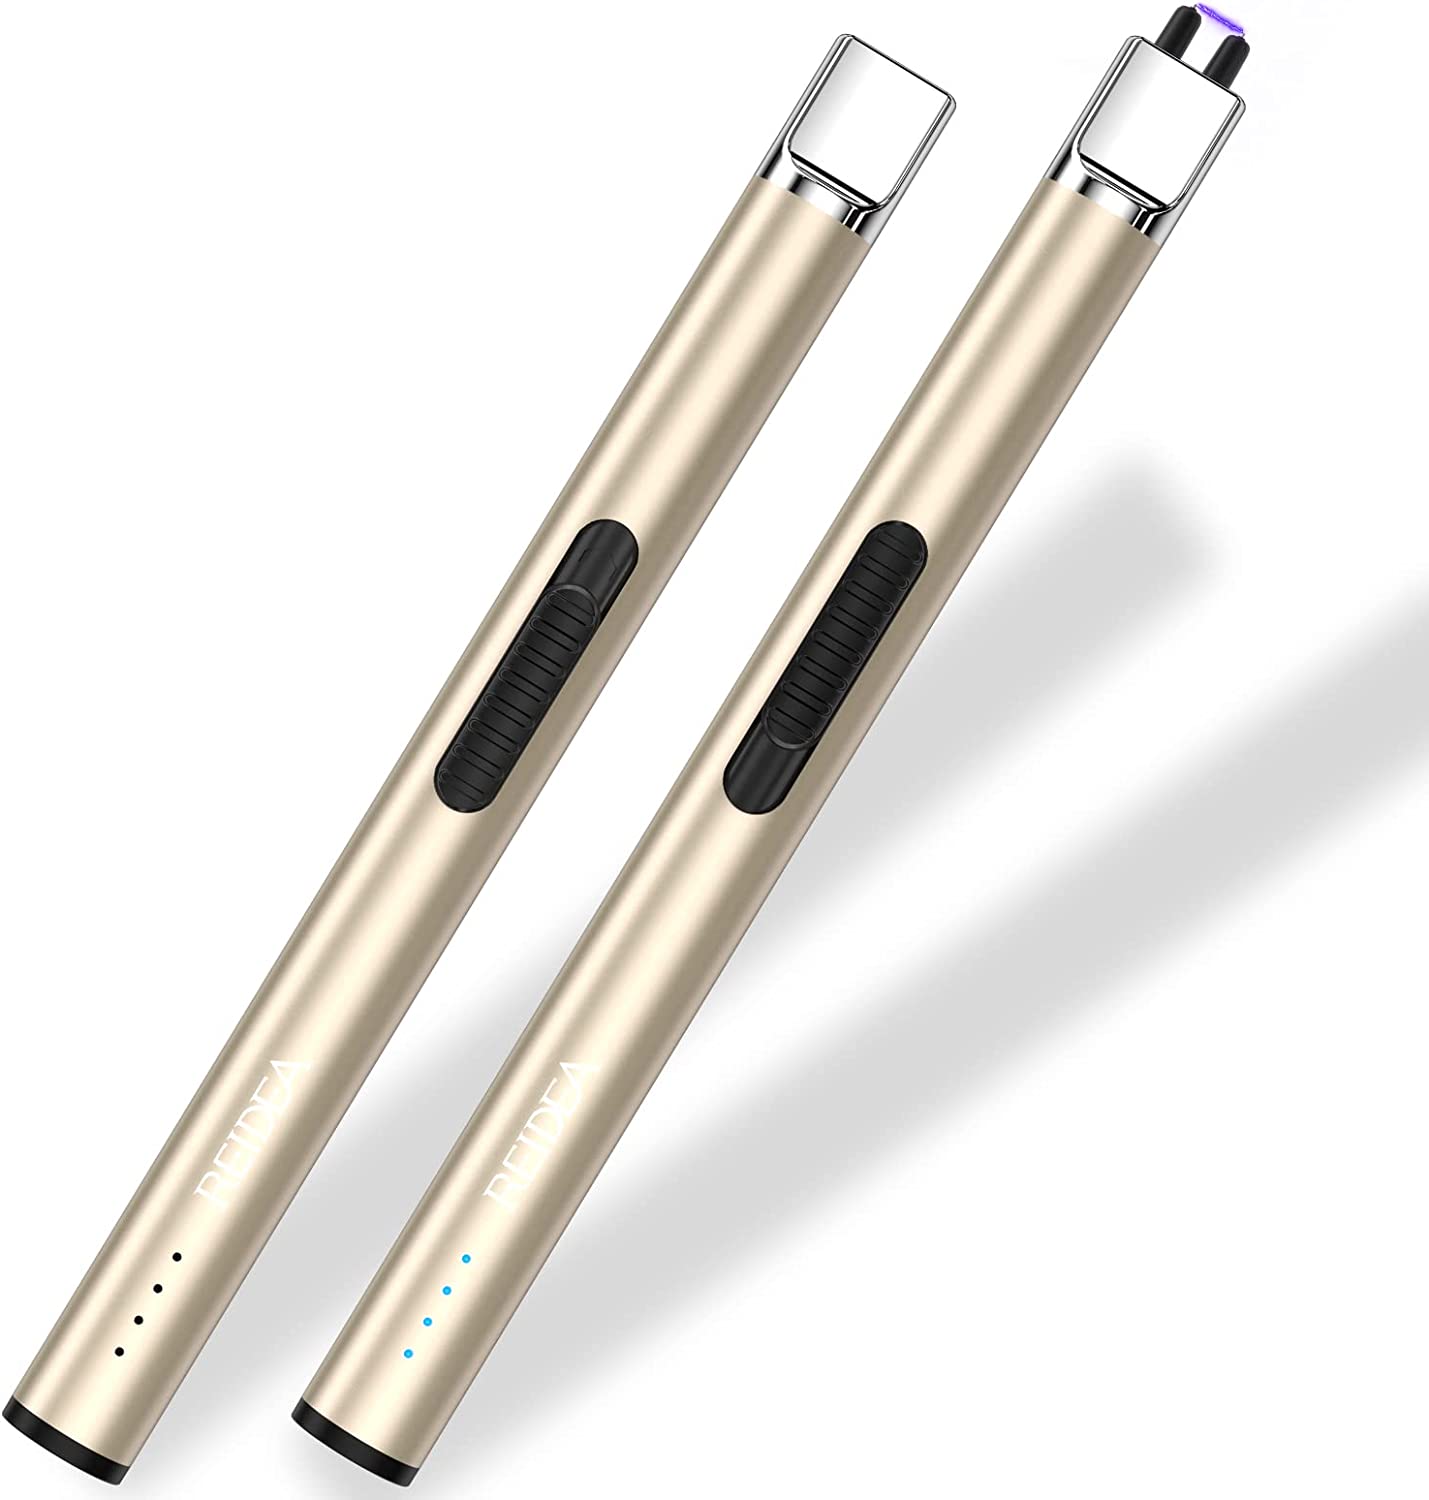 REIDEA S4 Pro Electric Arc Lighter, 2 Pack